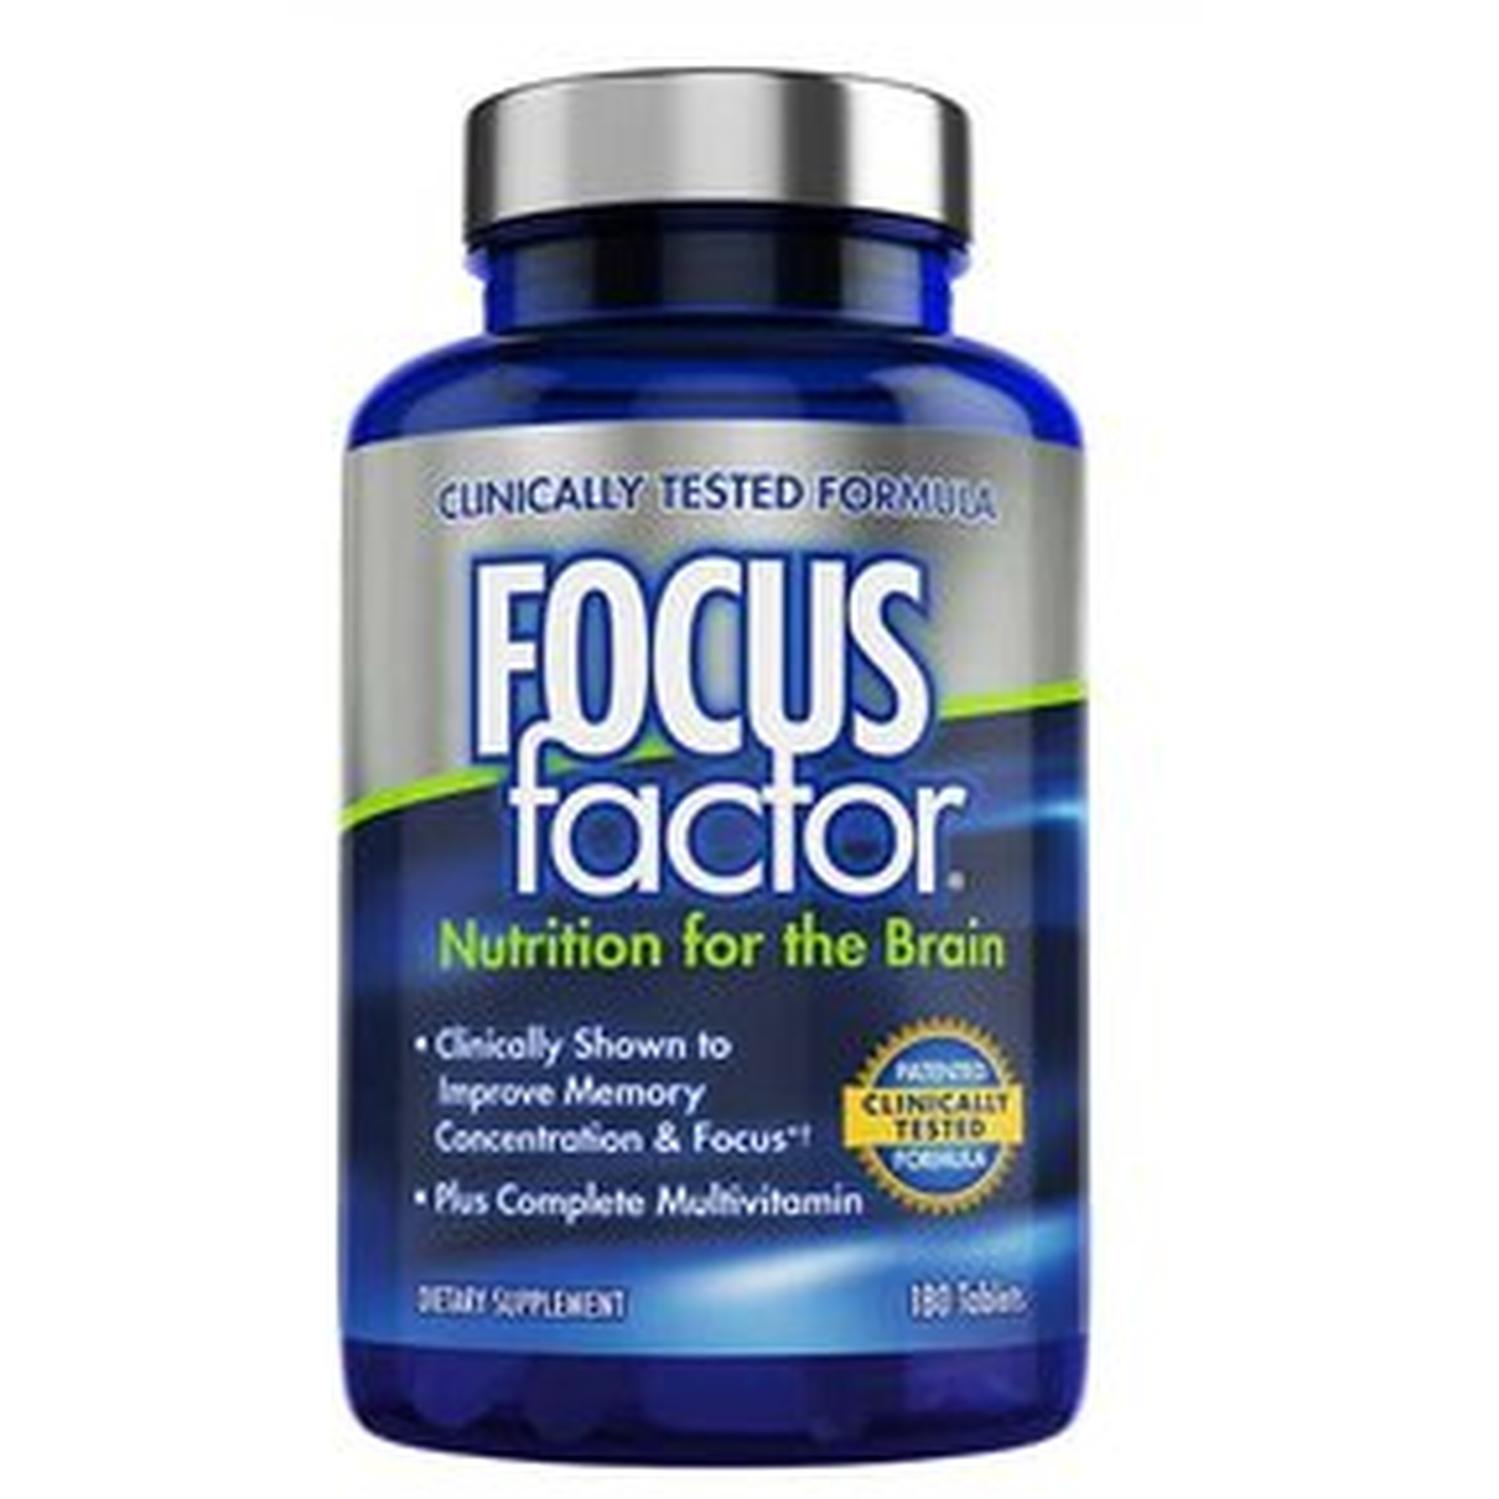 Focus Factor Suplemento Para El Cerebro 180 Tabletas